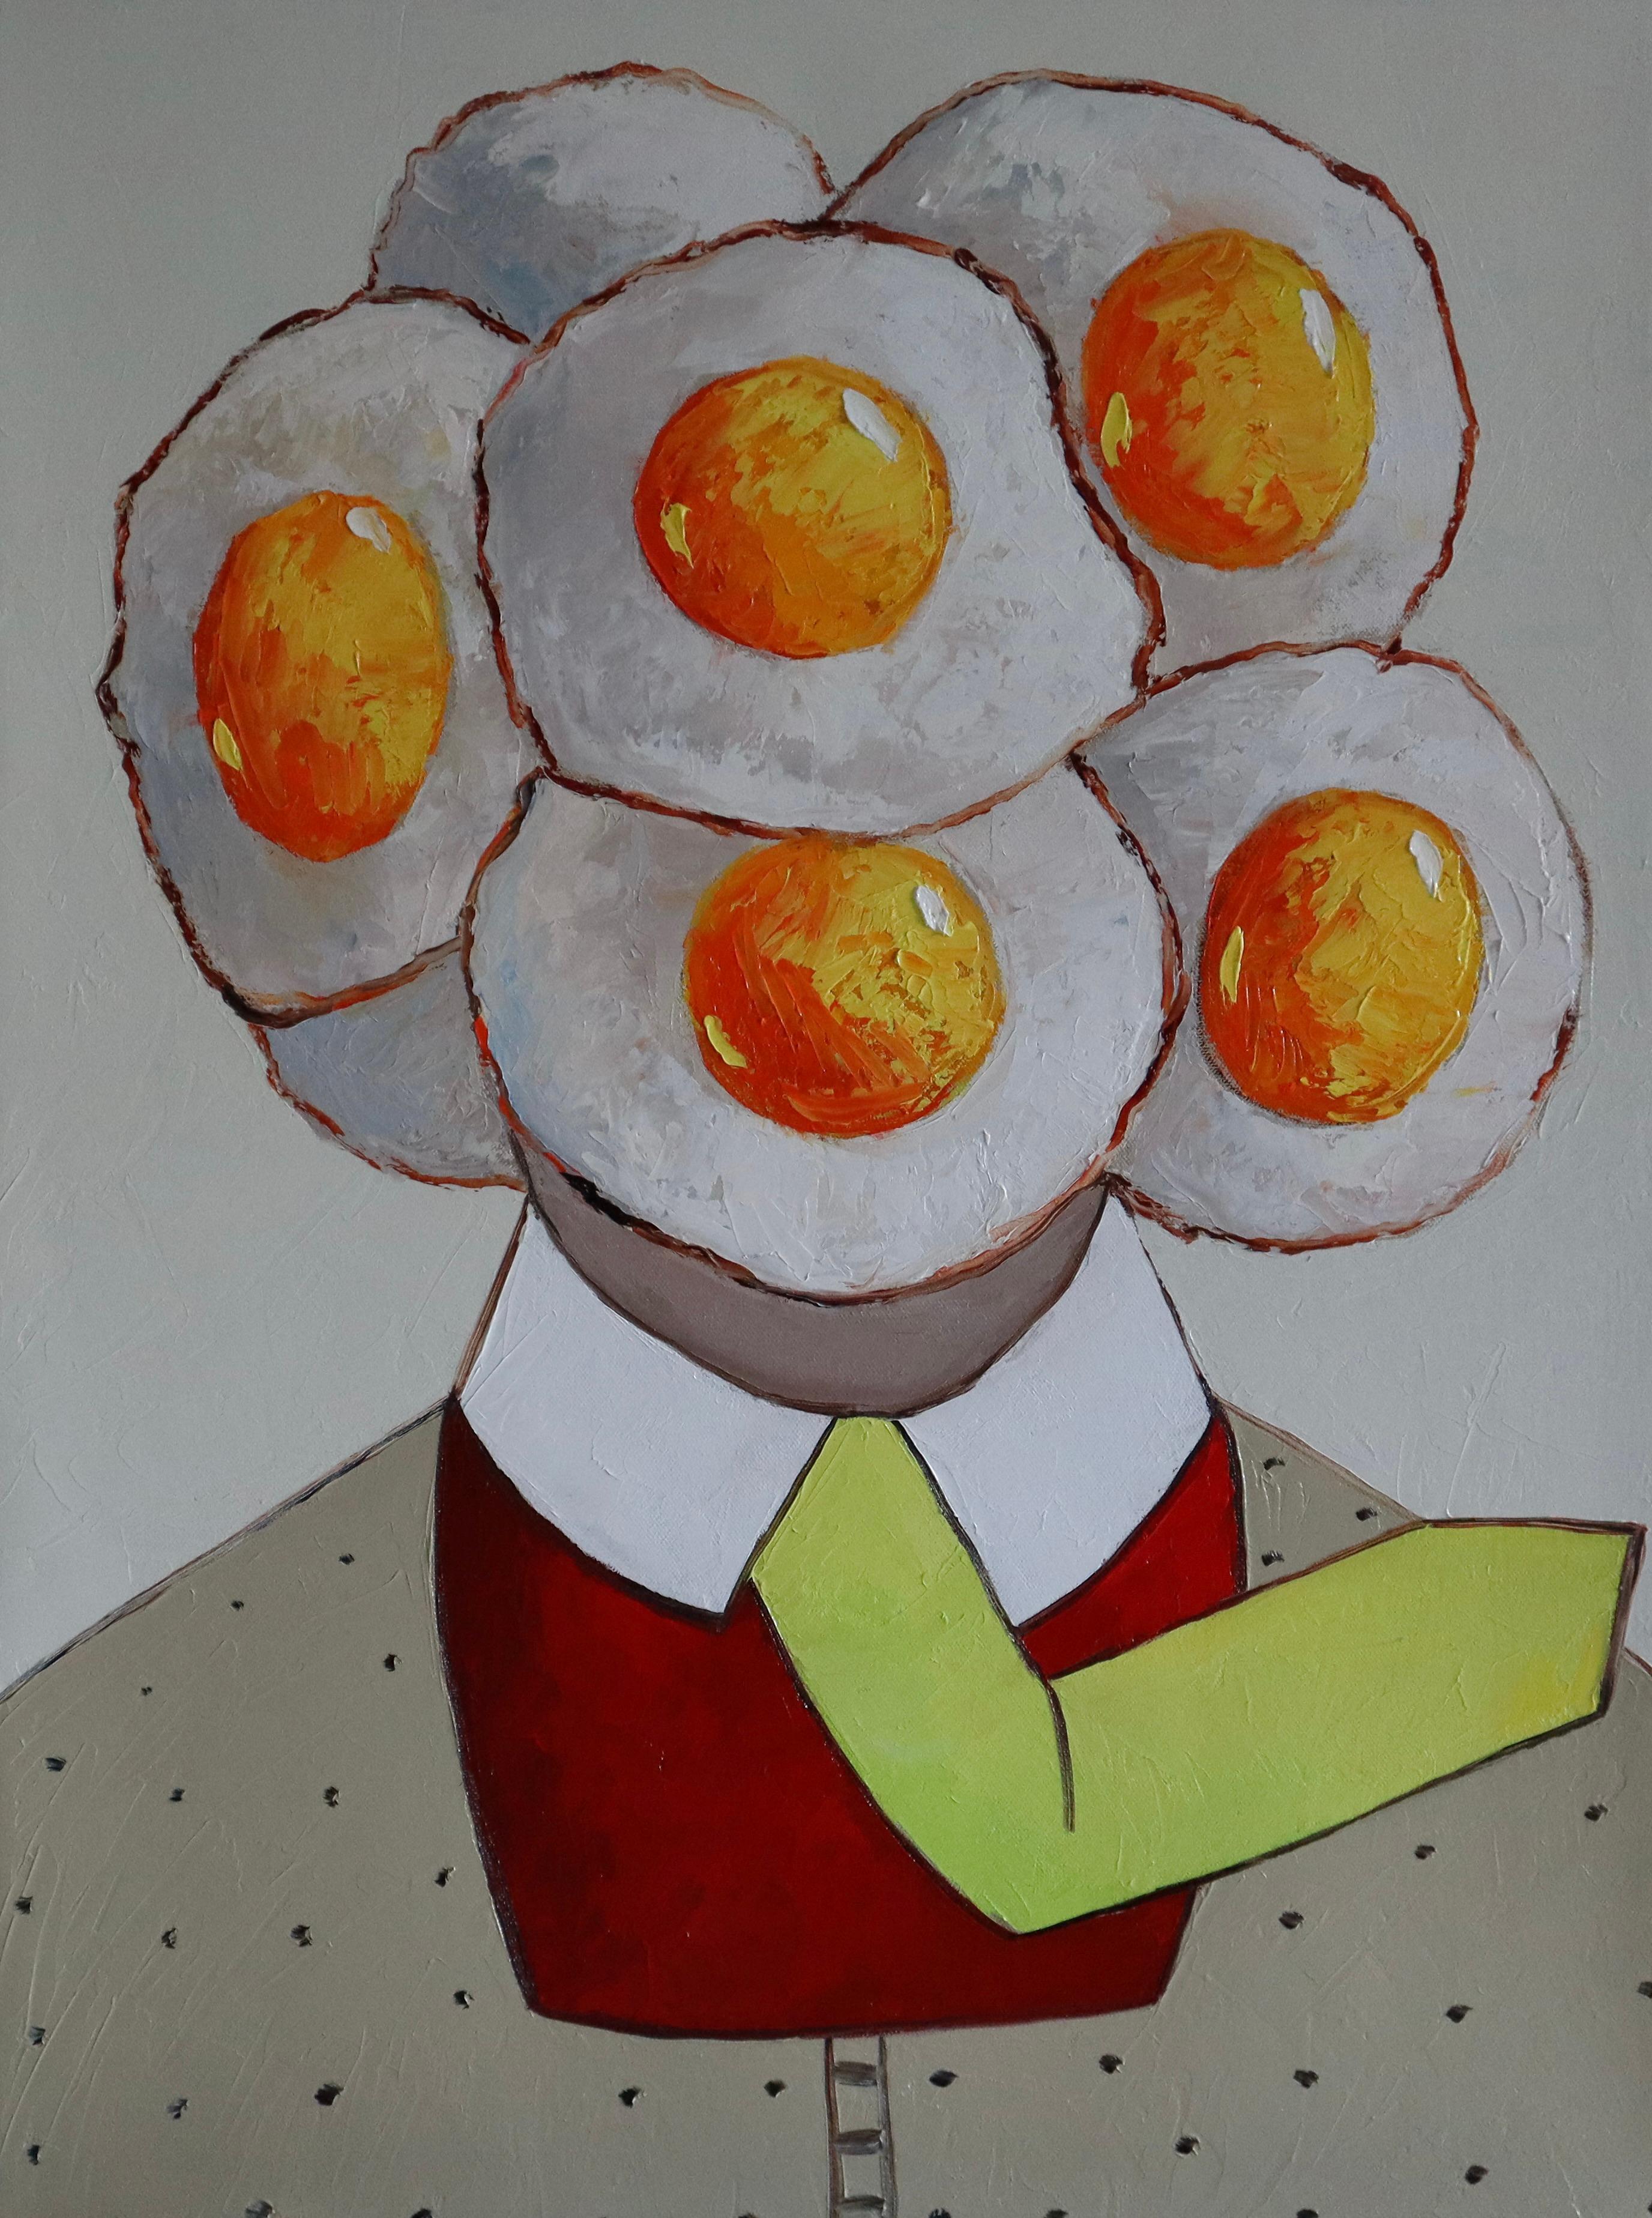 Suthamma (Ta) Byrne Portrait Painting - Egg Boy on a windy day